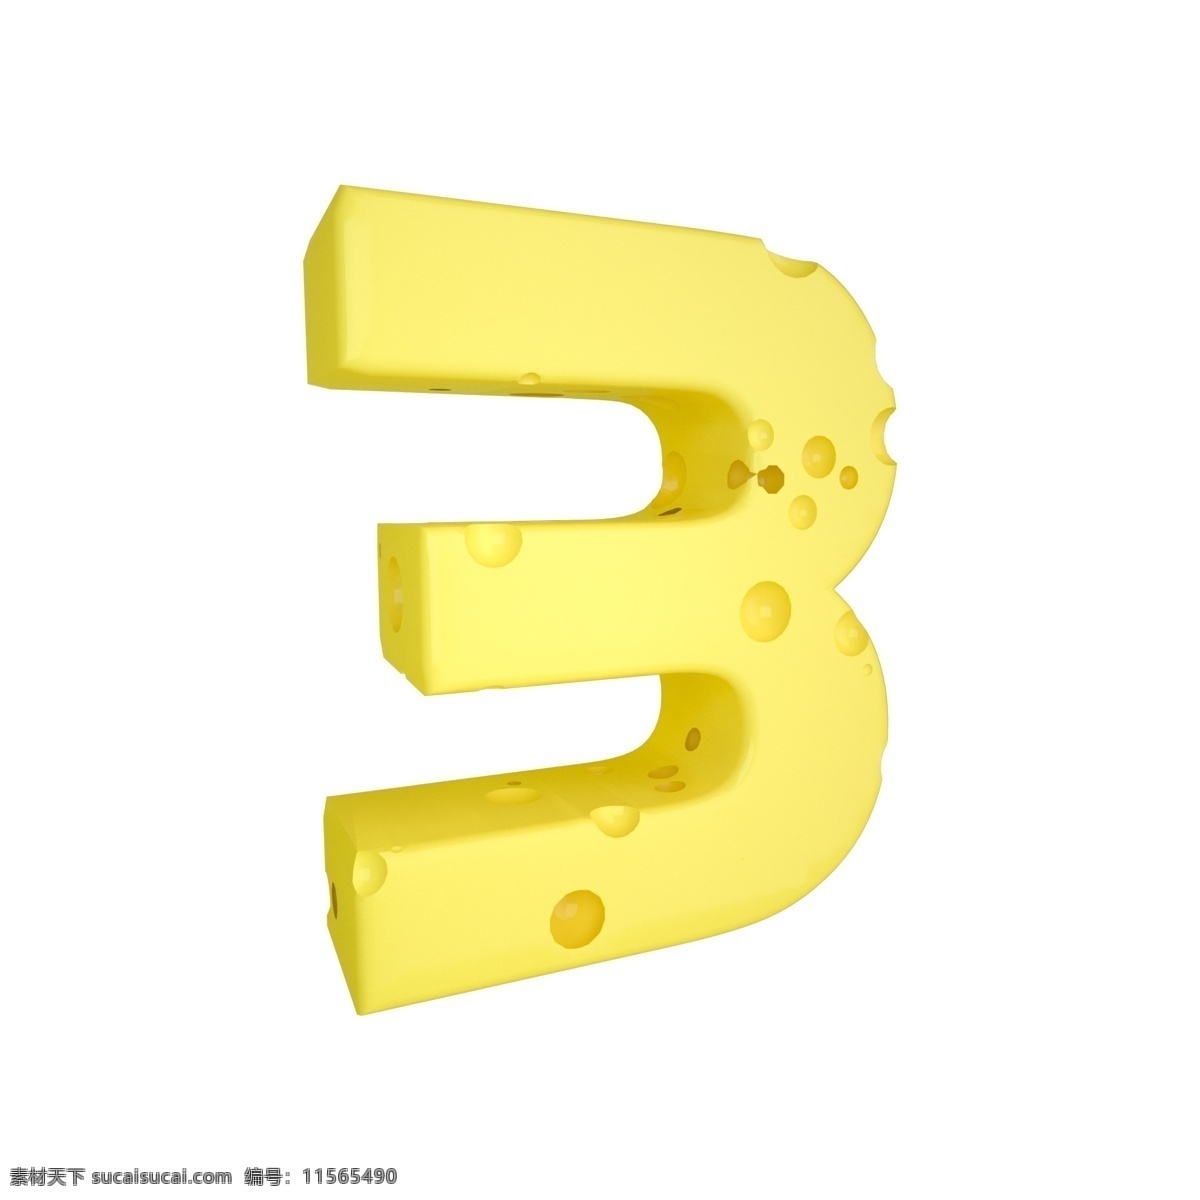 c4d 创意 奶酪 数字 装饰 3d 黄色 立体 食物 平面海报配图 电商淘宝装饰 可爱 柔和 数字3